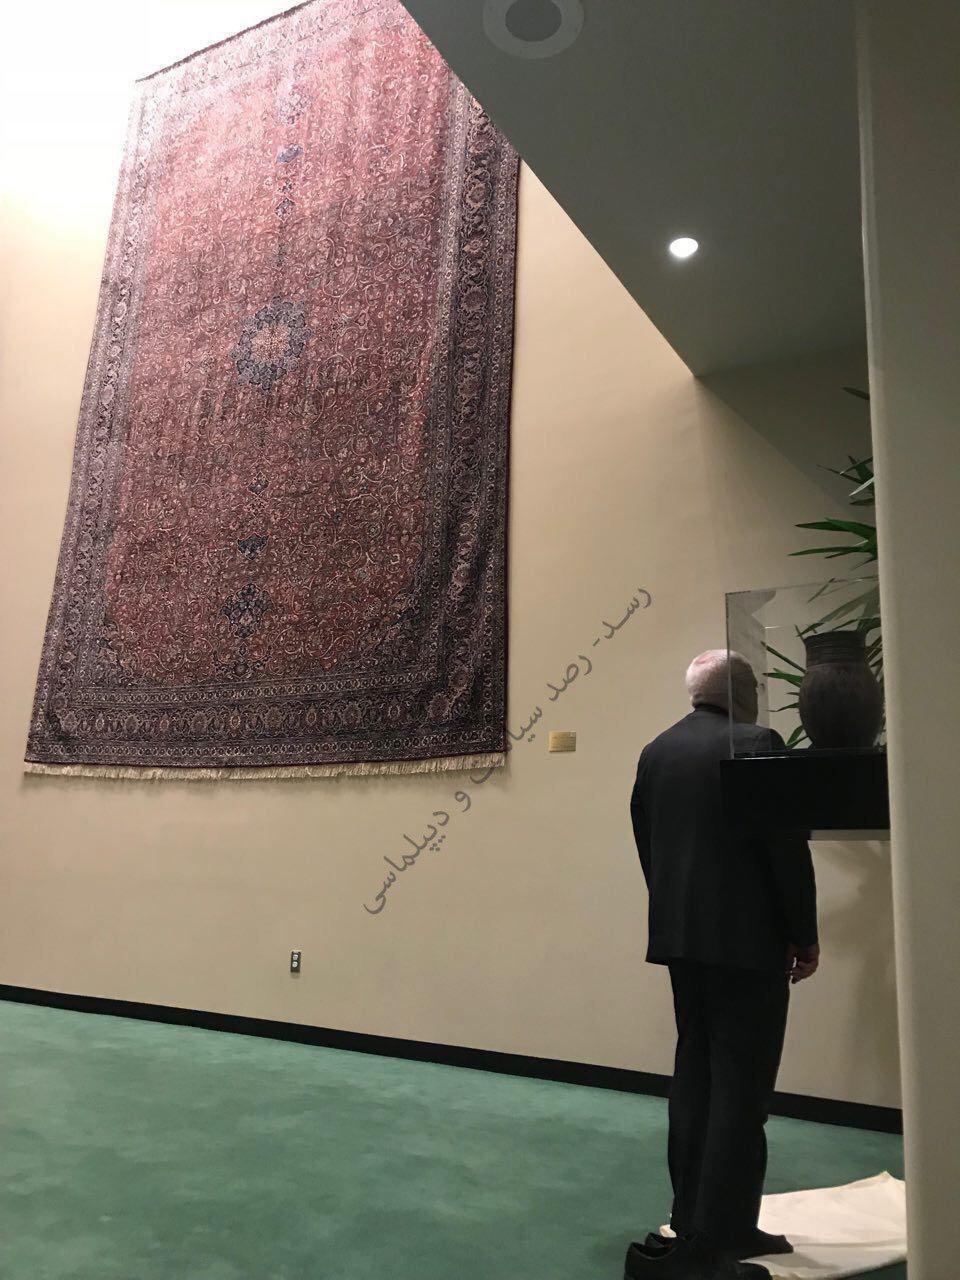 نماز ظریف در ایرانی ترین بخش سازمان ملل (عکس)